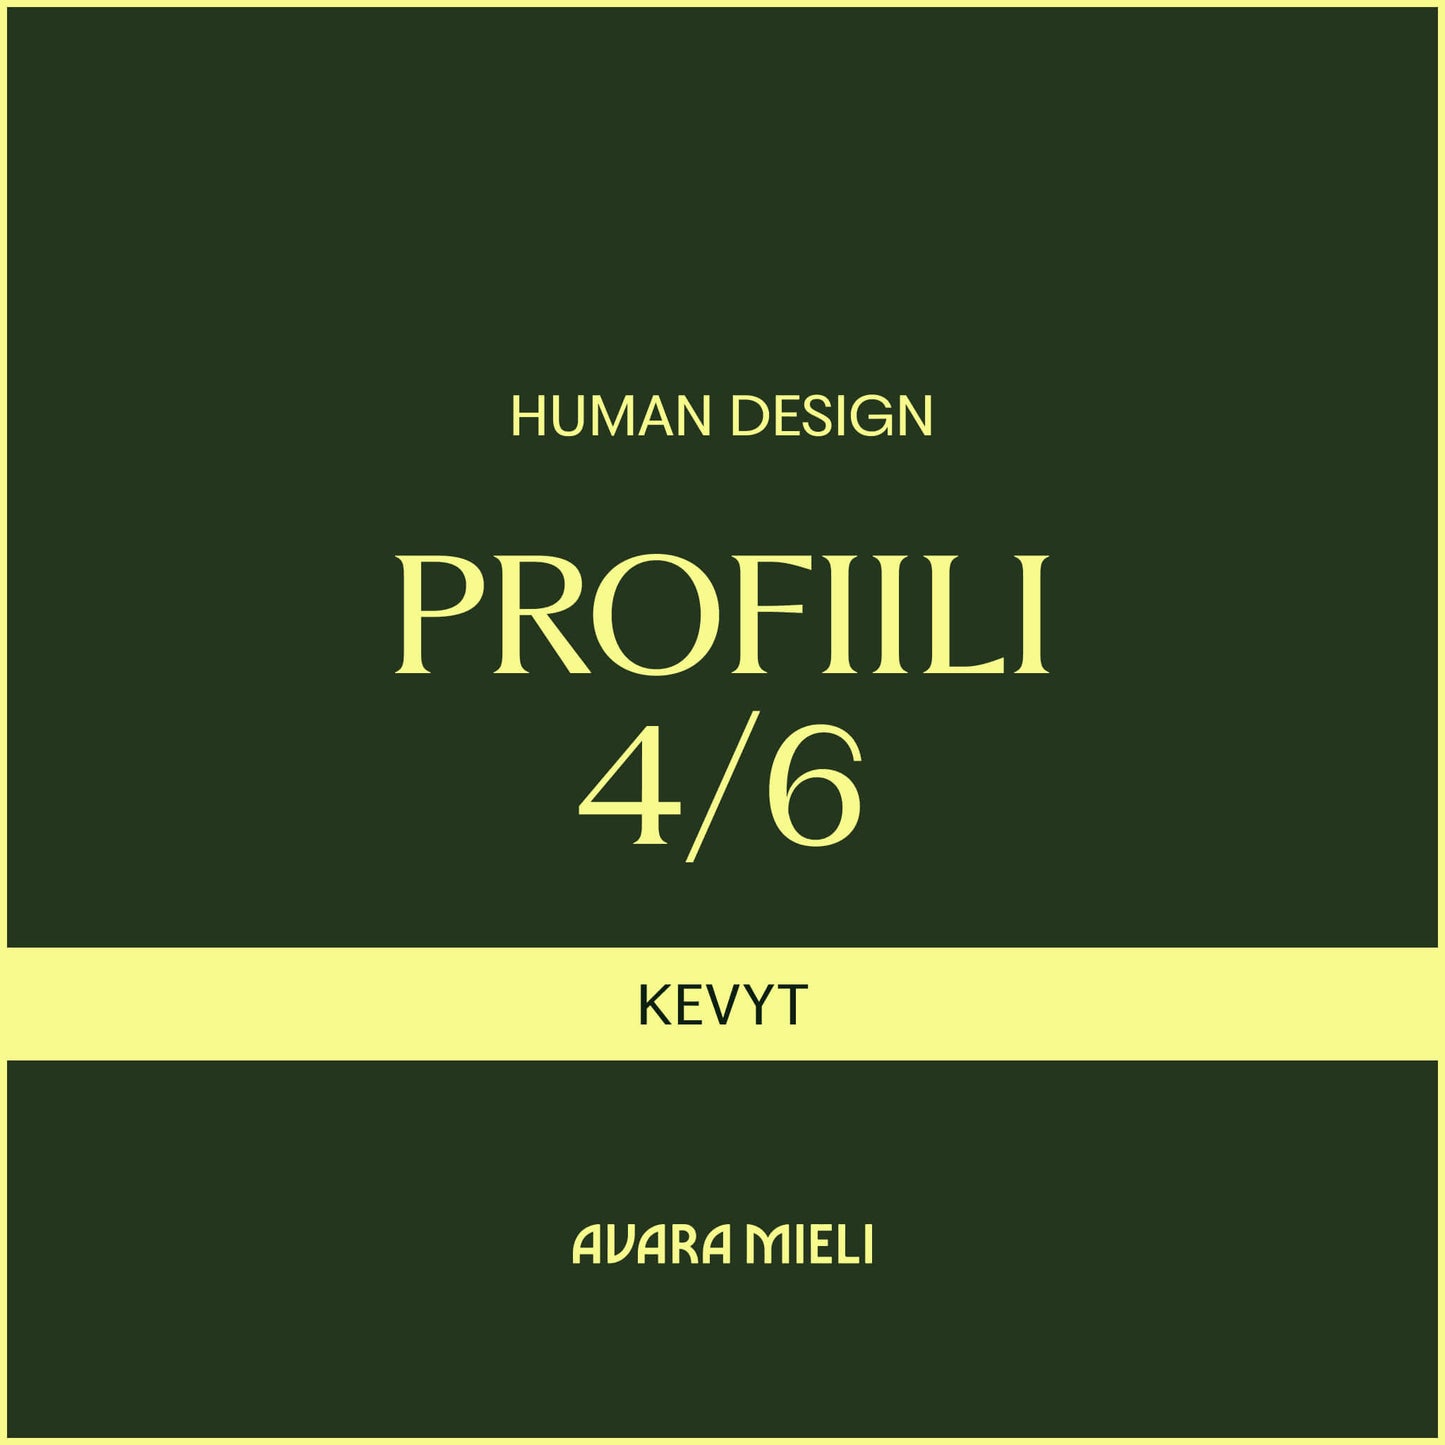 Human Design Profiili 4/6